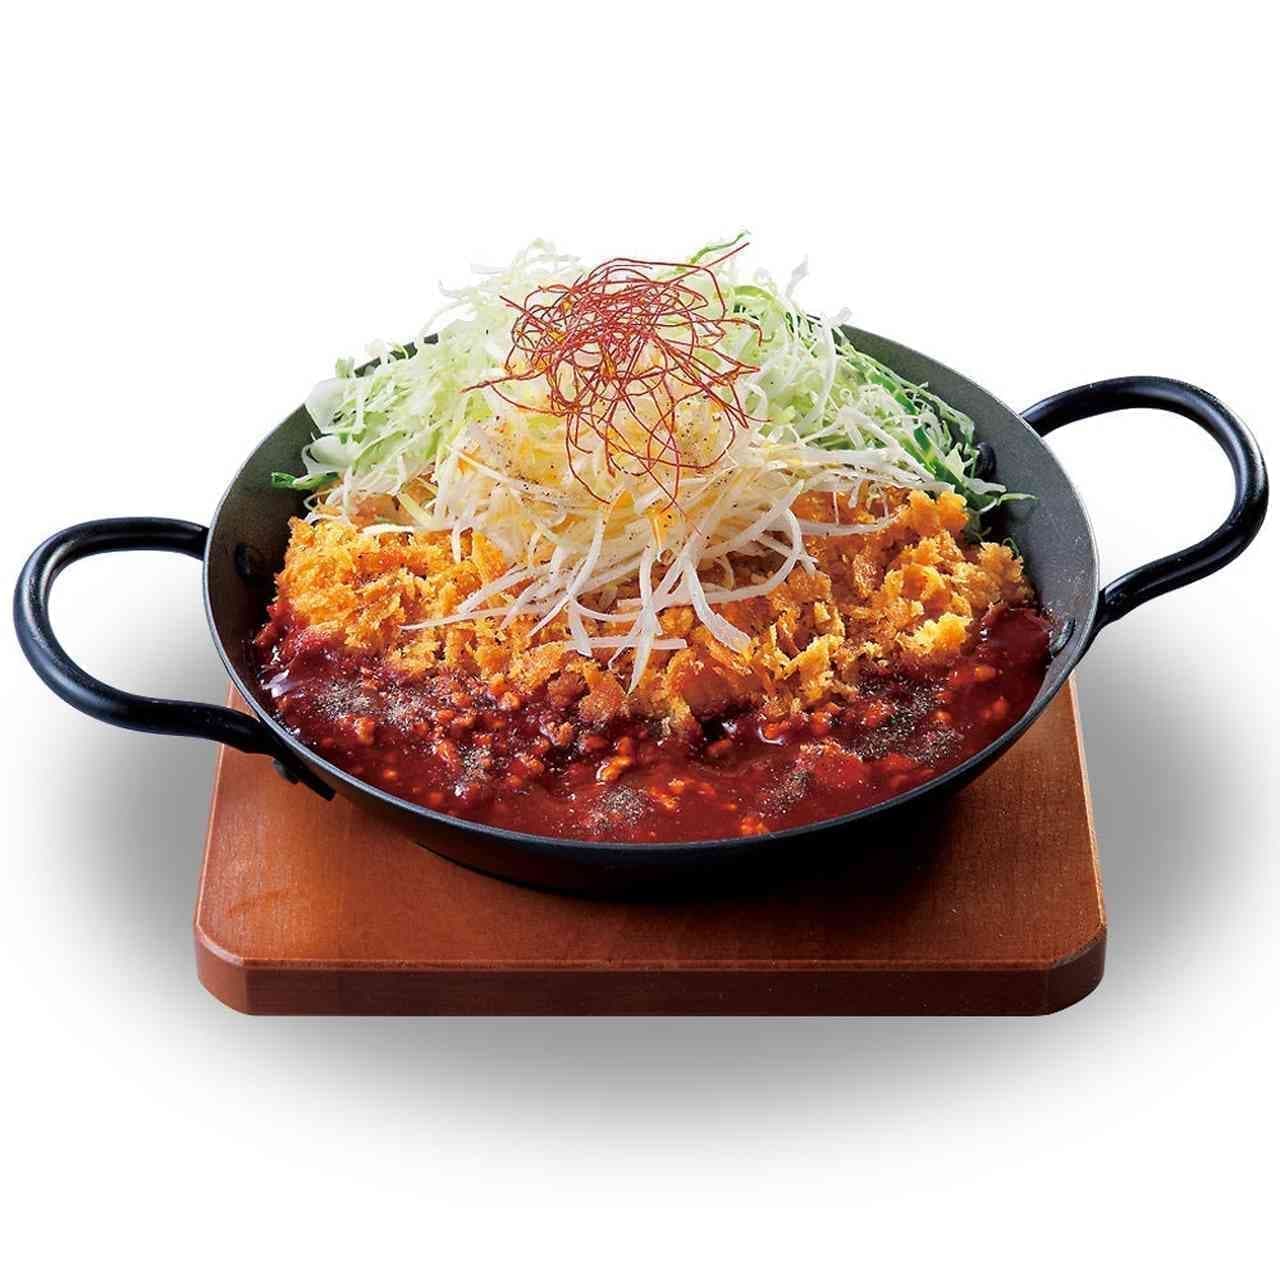 Katsuya "Spicy soup chicken cutlet